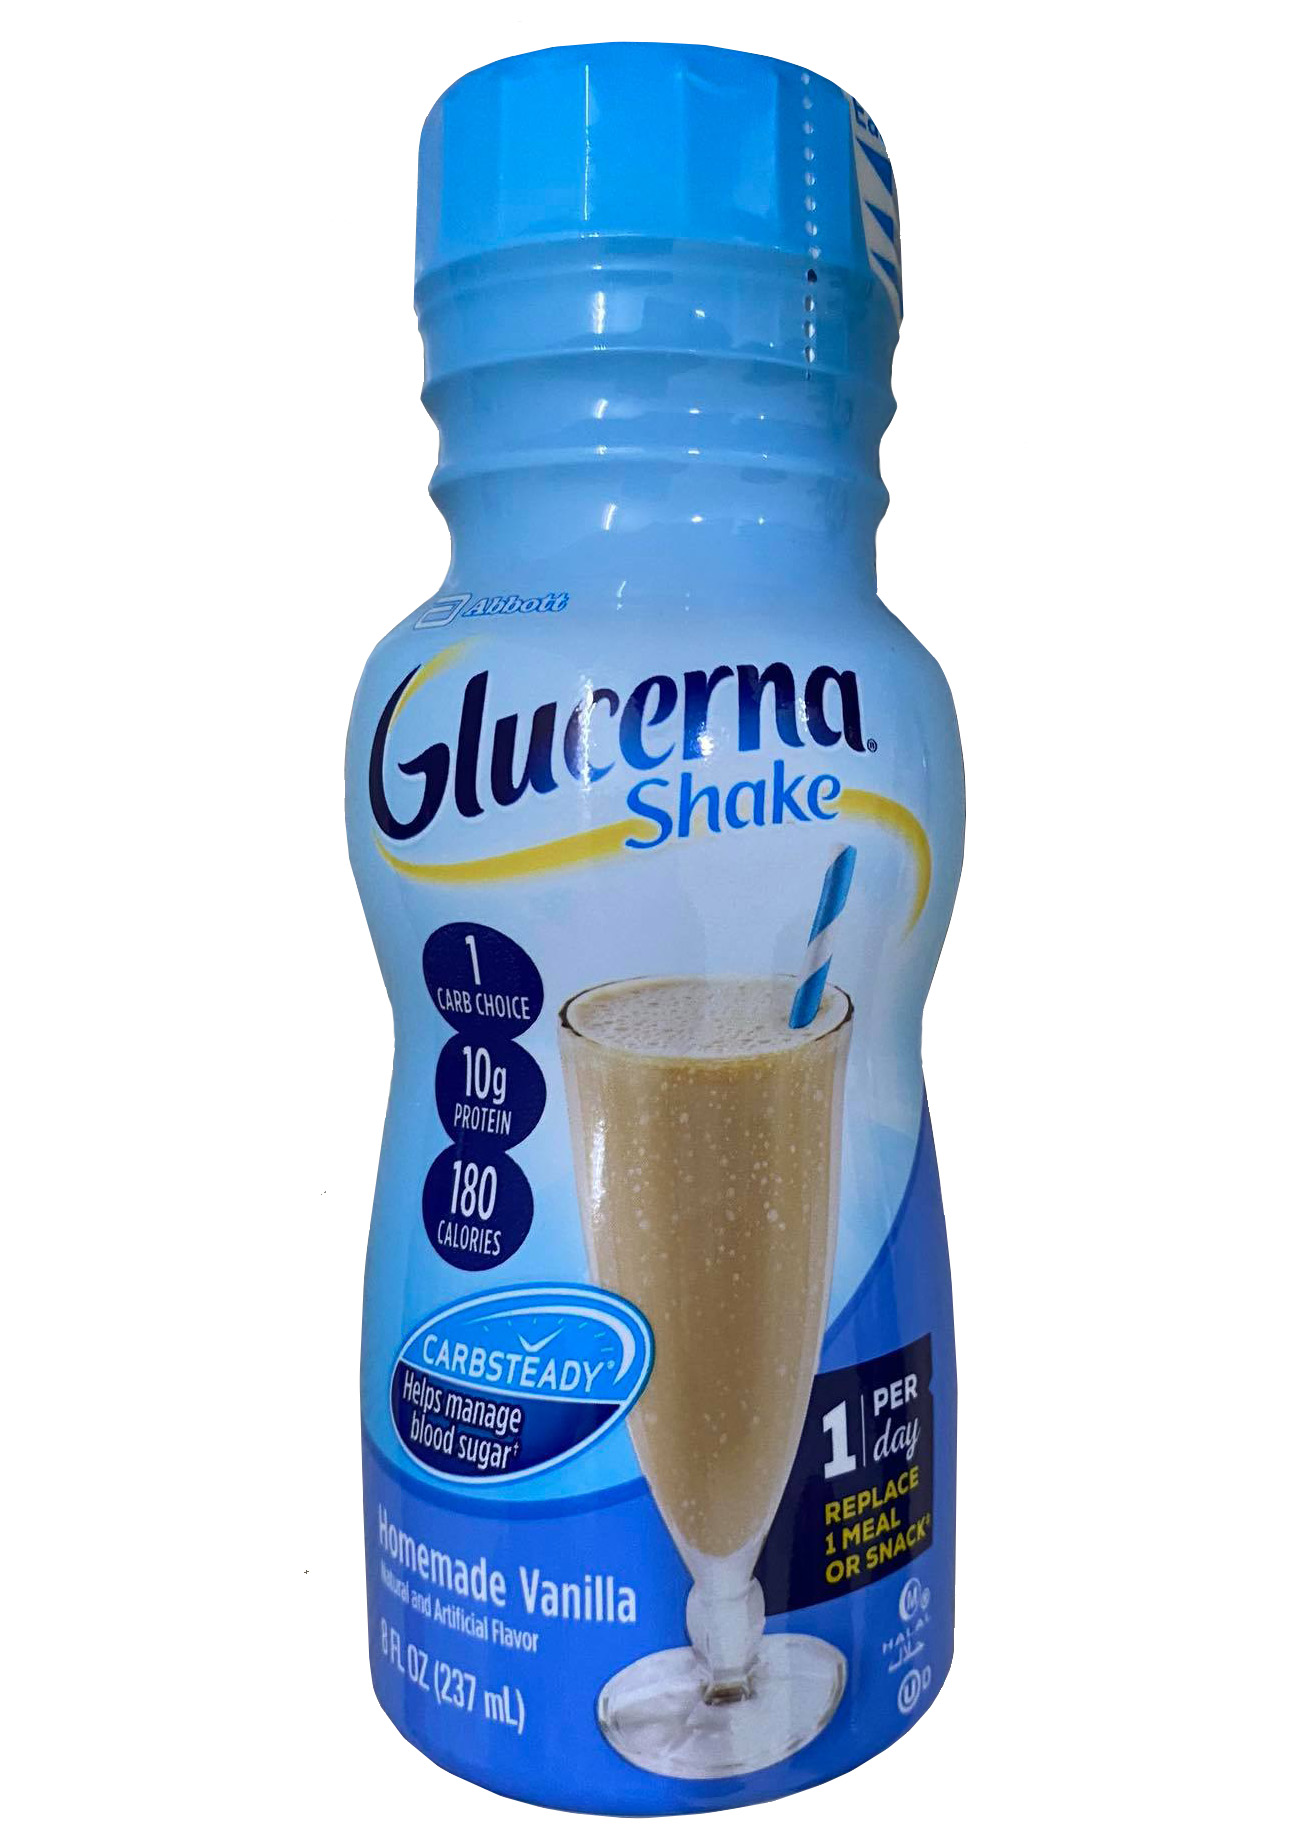 Sữa nước Glucerna - Thiết kế chuyên biệt dành cho người tiểu đường